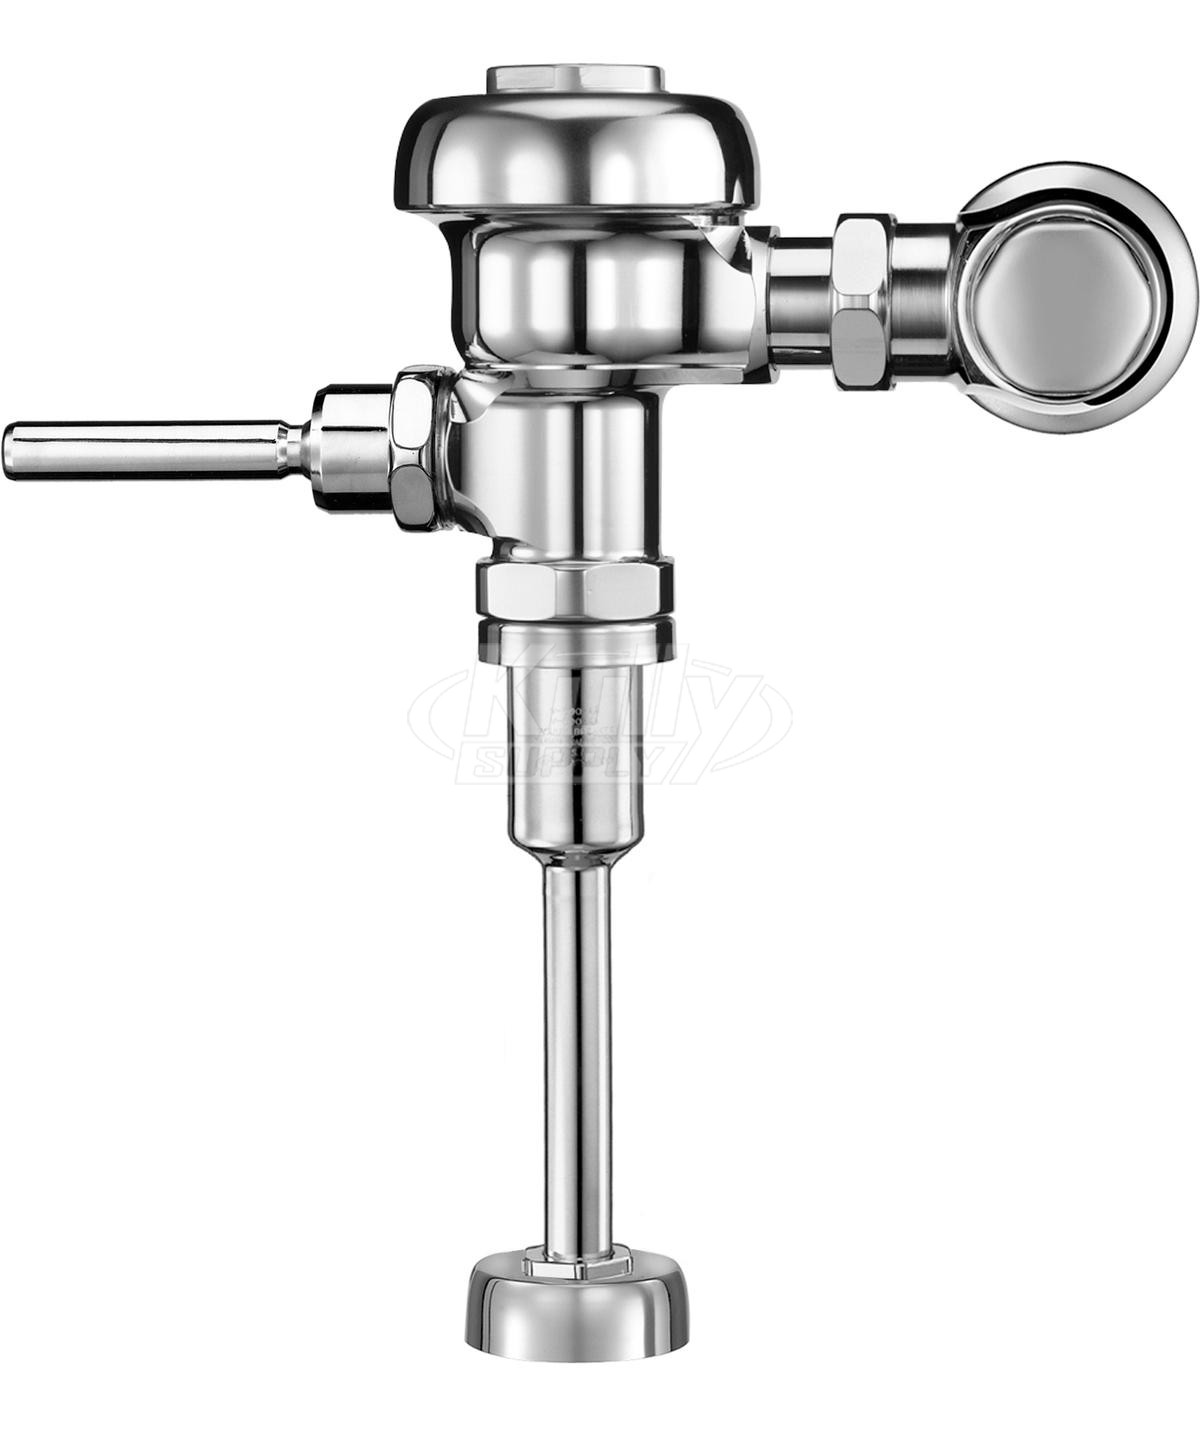 Sloan 186 Urinal 1.5 GPF Flushometer